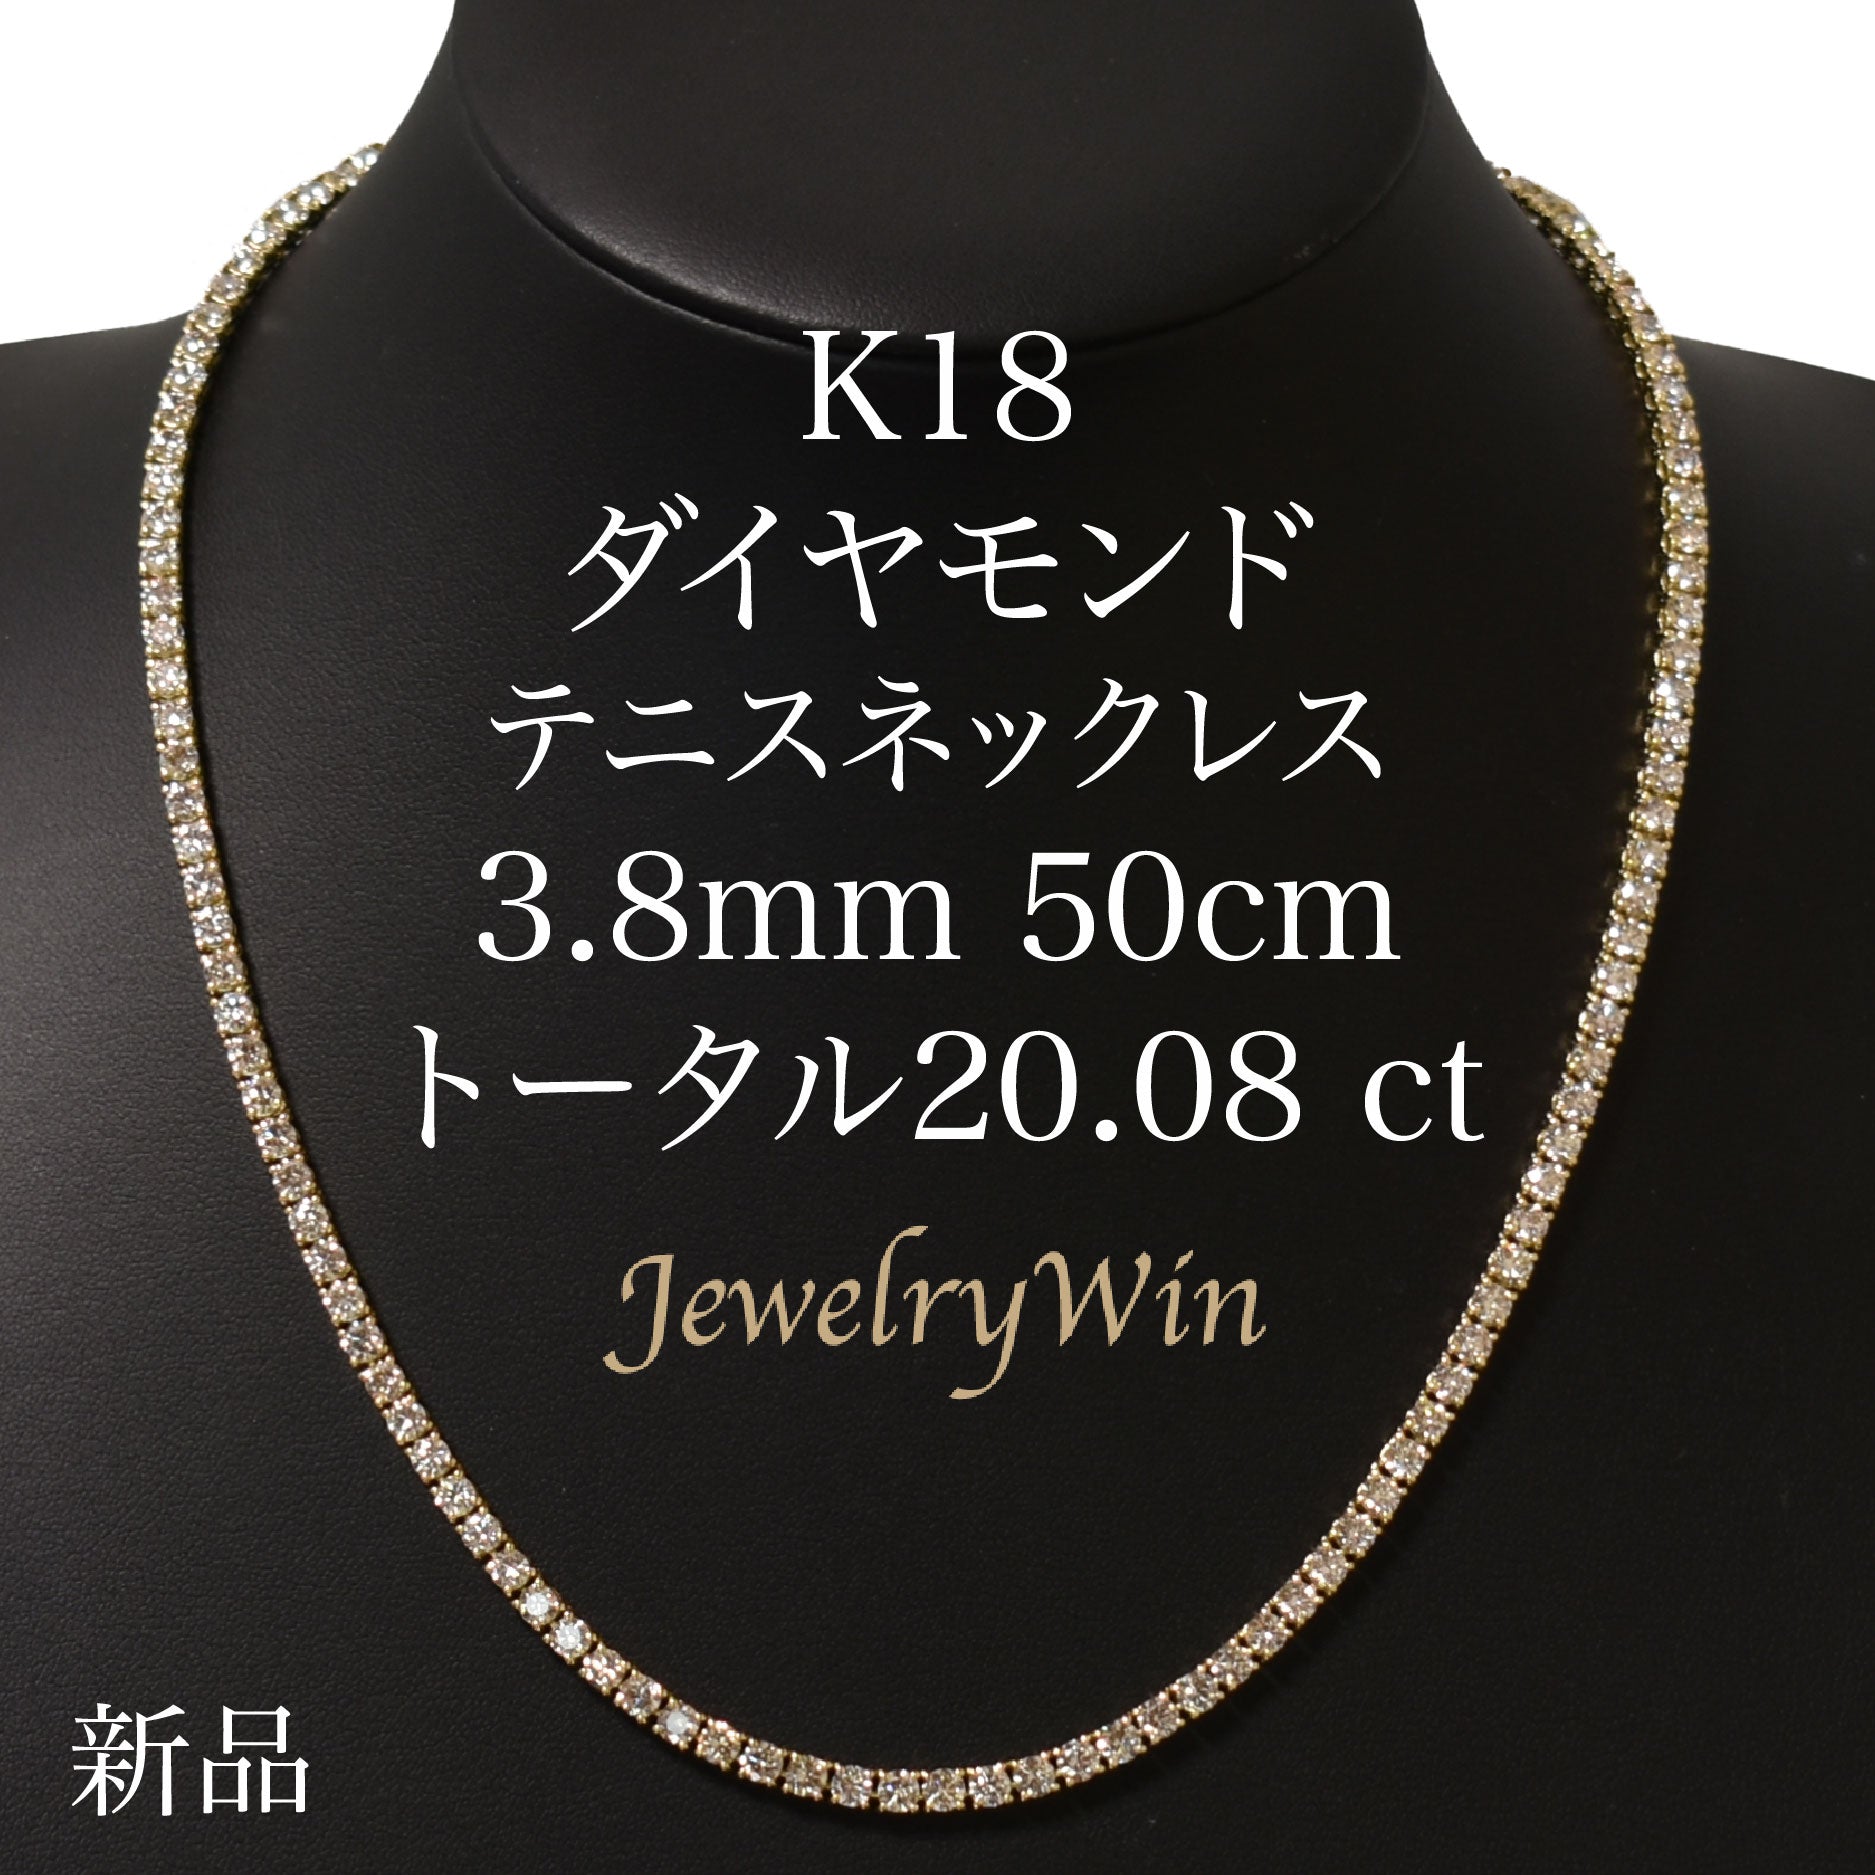 【新品】K18YG ダイヤモンド ネックレス 1.037CT F VS2-SI1 EX-VG